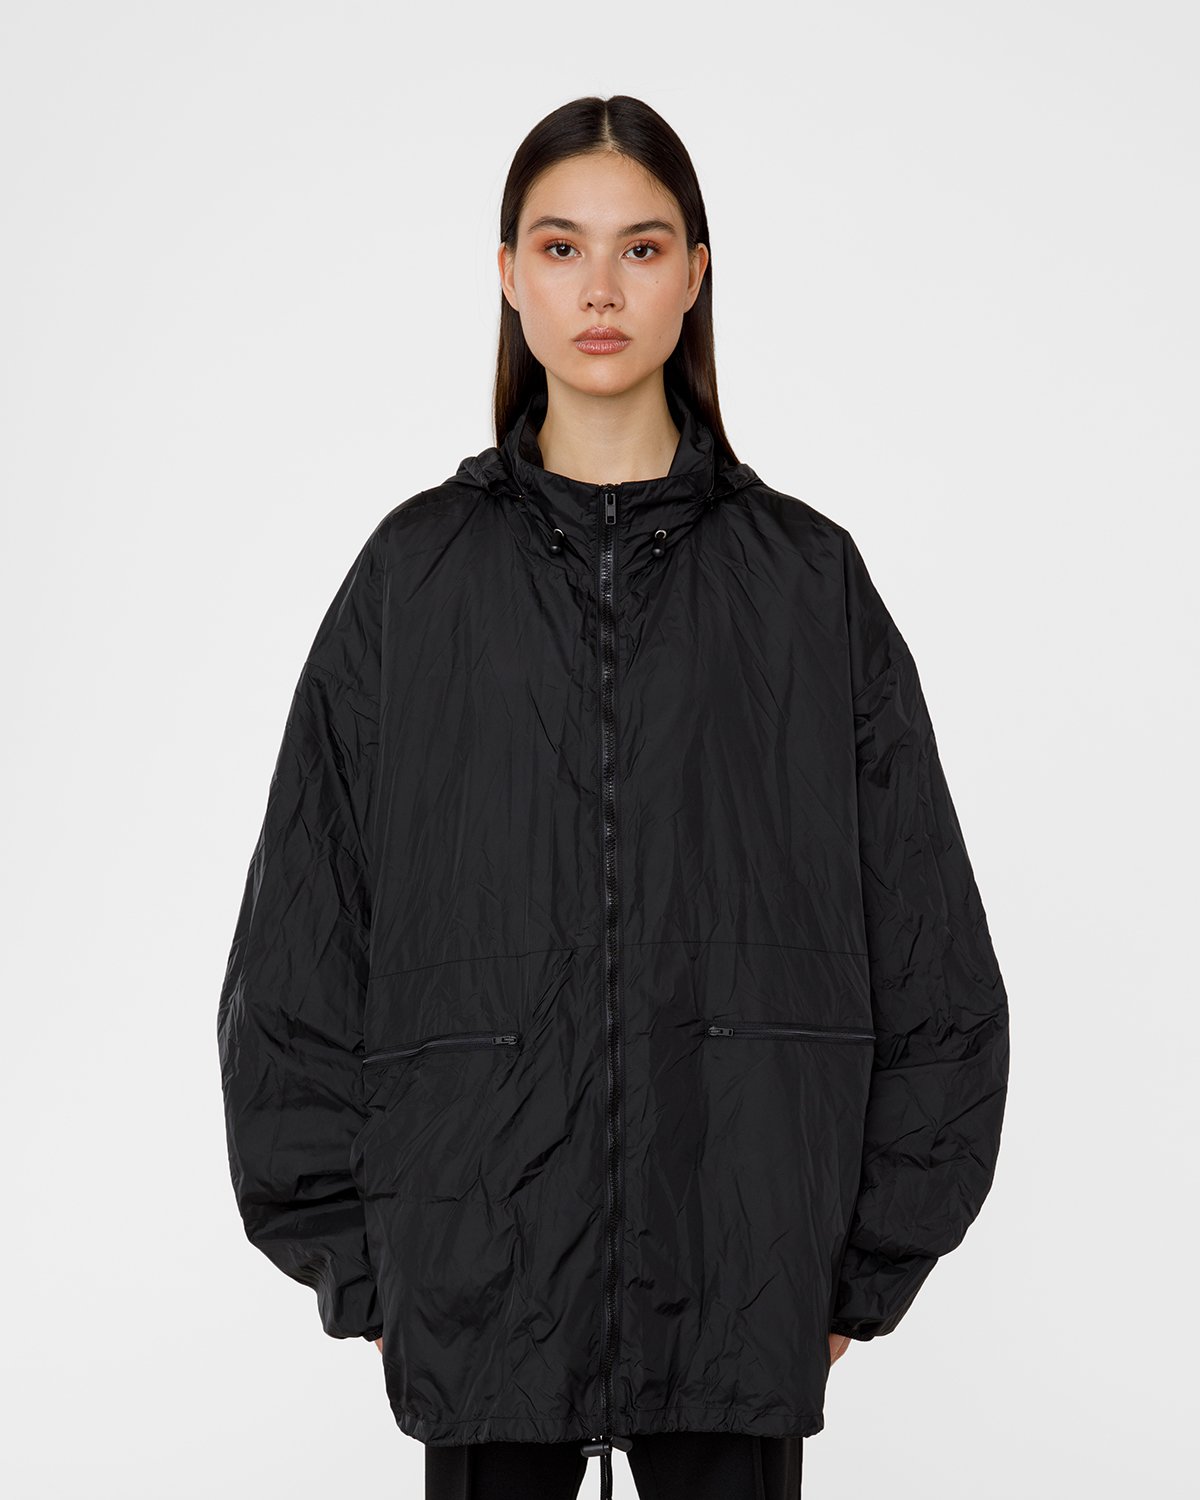 Maison Margiela - Outdoor Jacket - Clothing - Black - Image 4